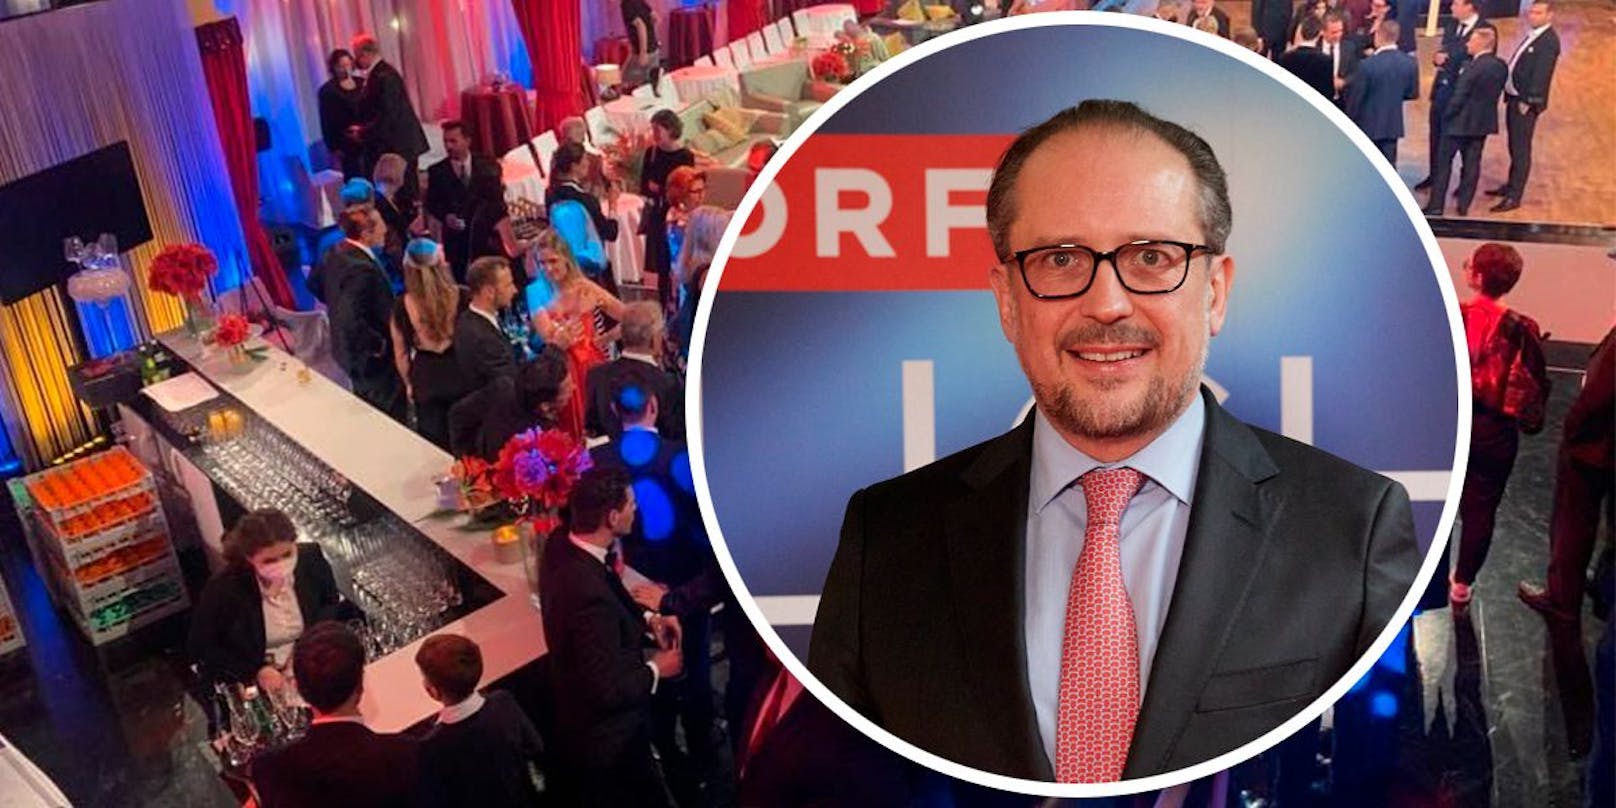 Bundeskanzler Alexander Schallenberg (ÖVP) nahm auch an der "Licht ins Dunkel"-Gala teil.